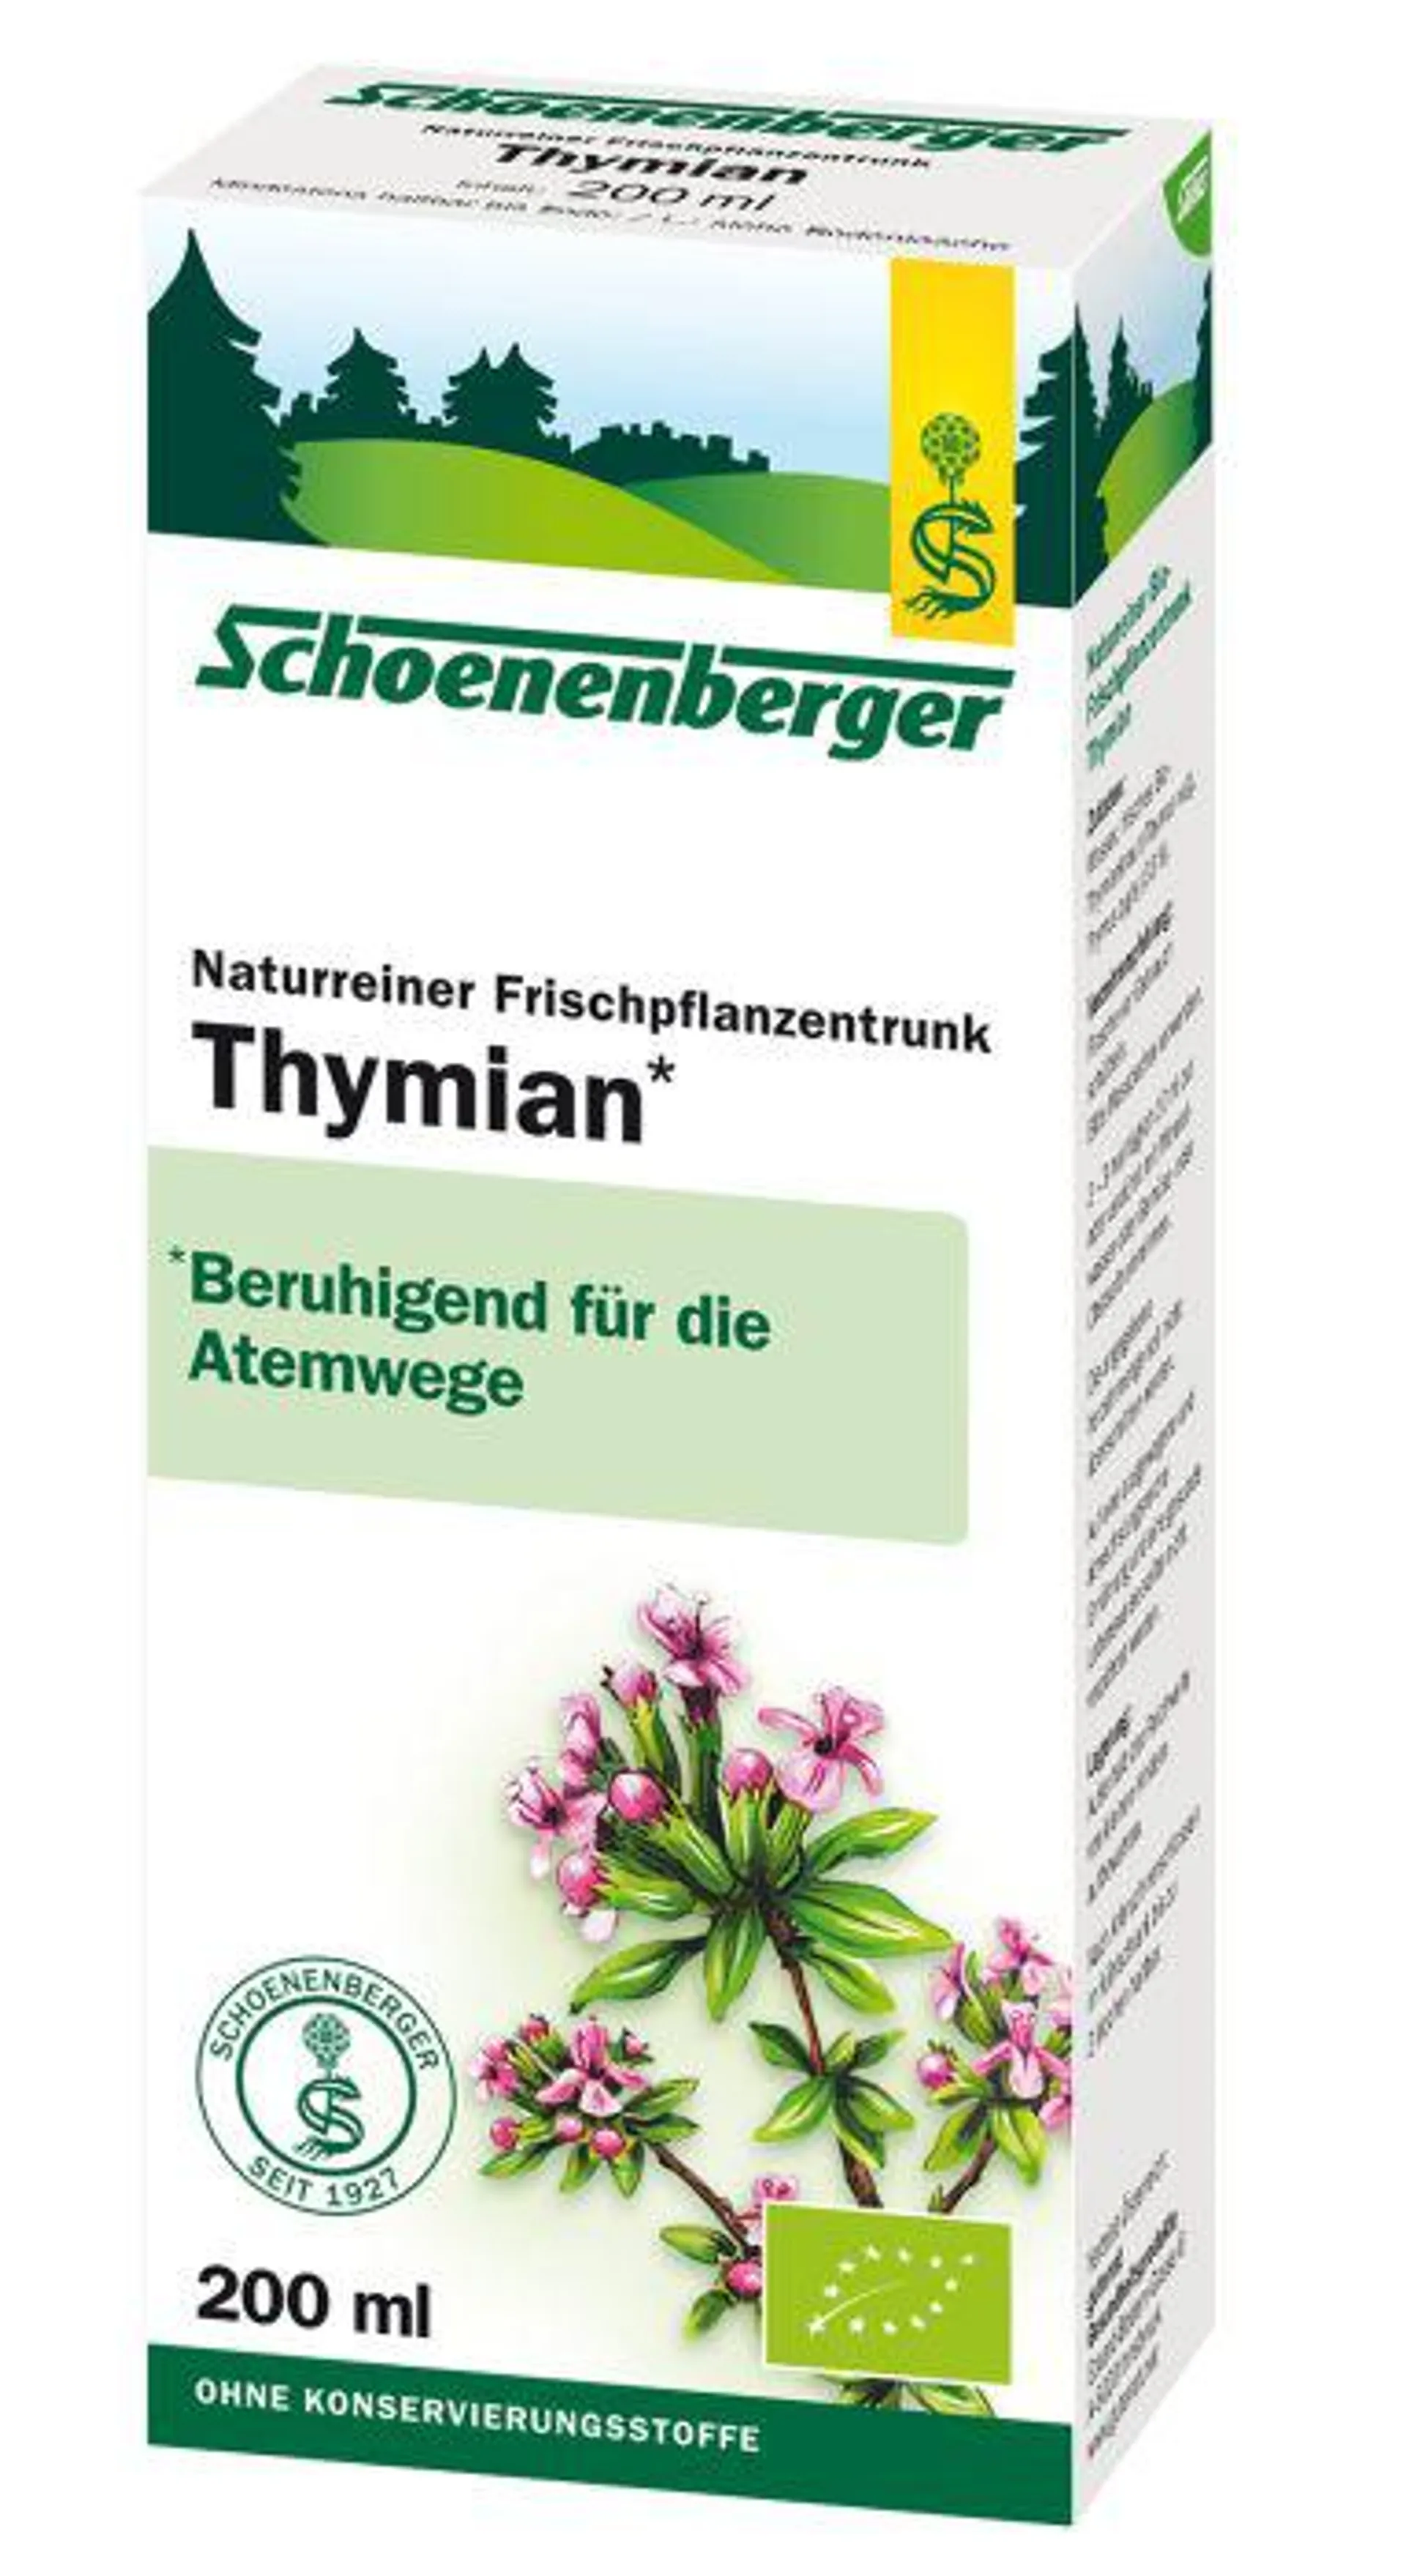 Schoenenberger® Thymian, Naturreiner Frischpflanzentrunk (BIO) 200ml